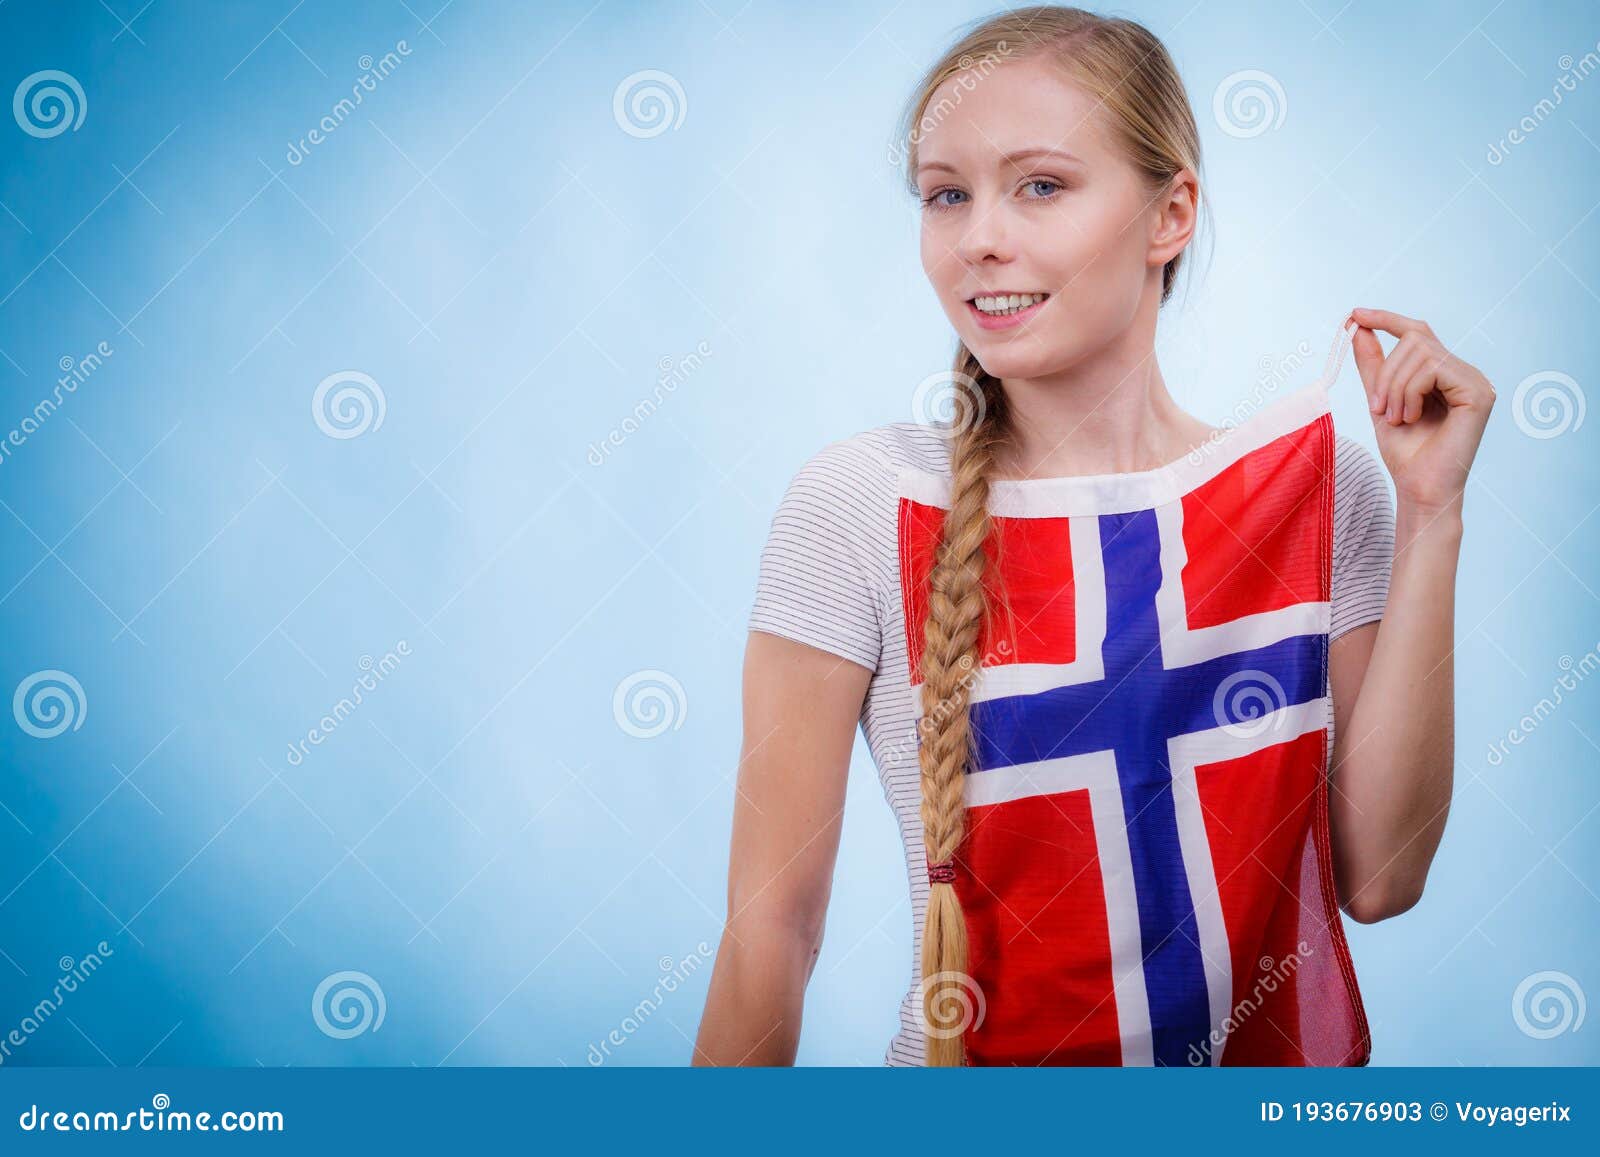 Norwegian teen girls